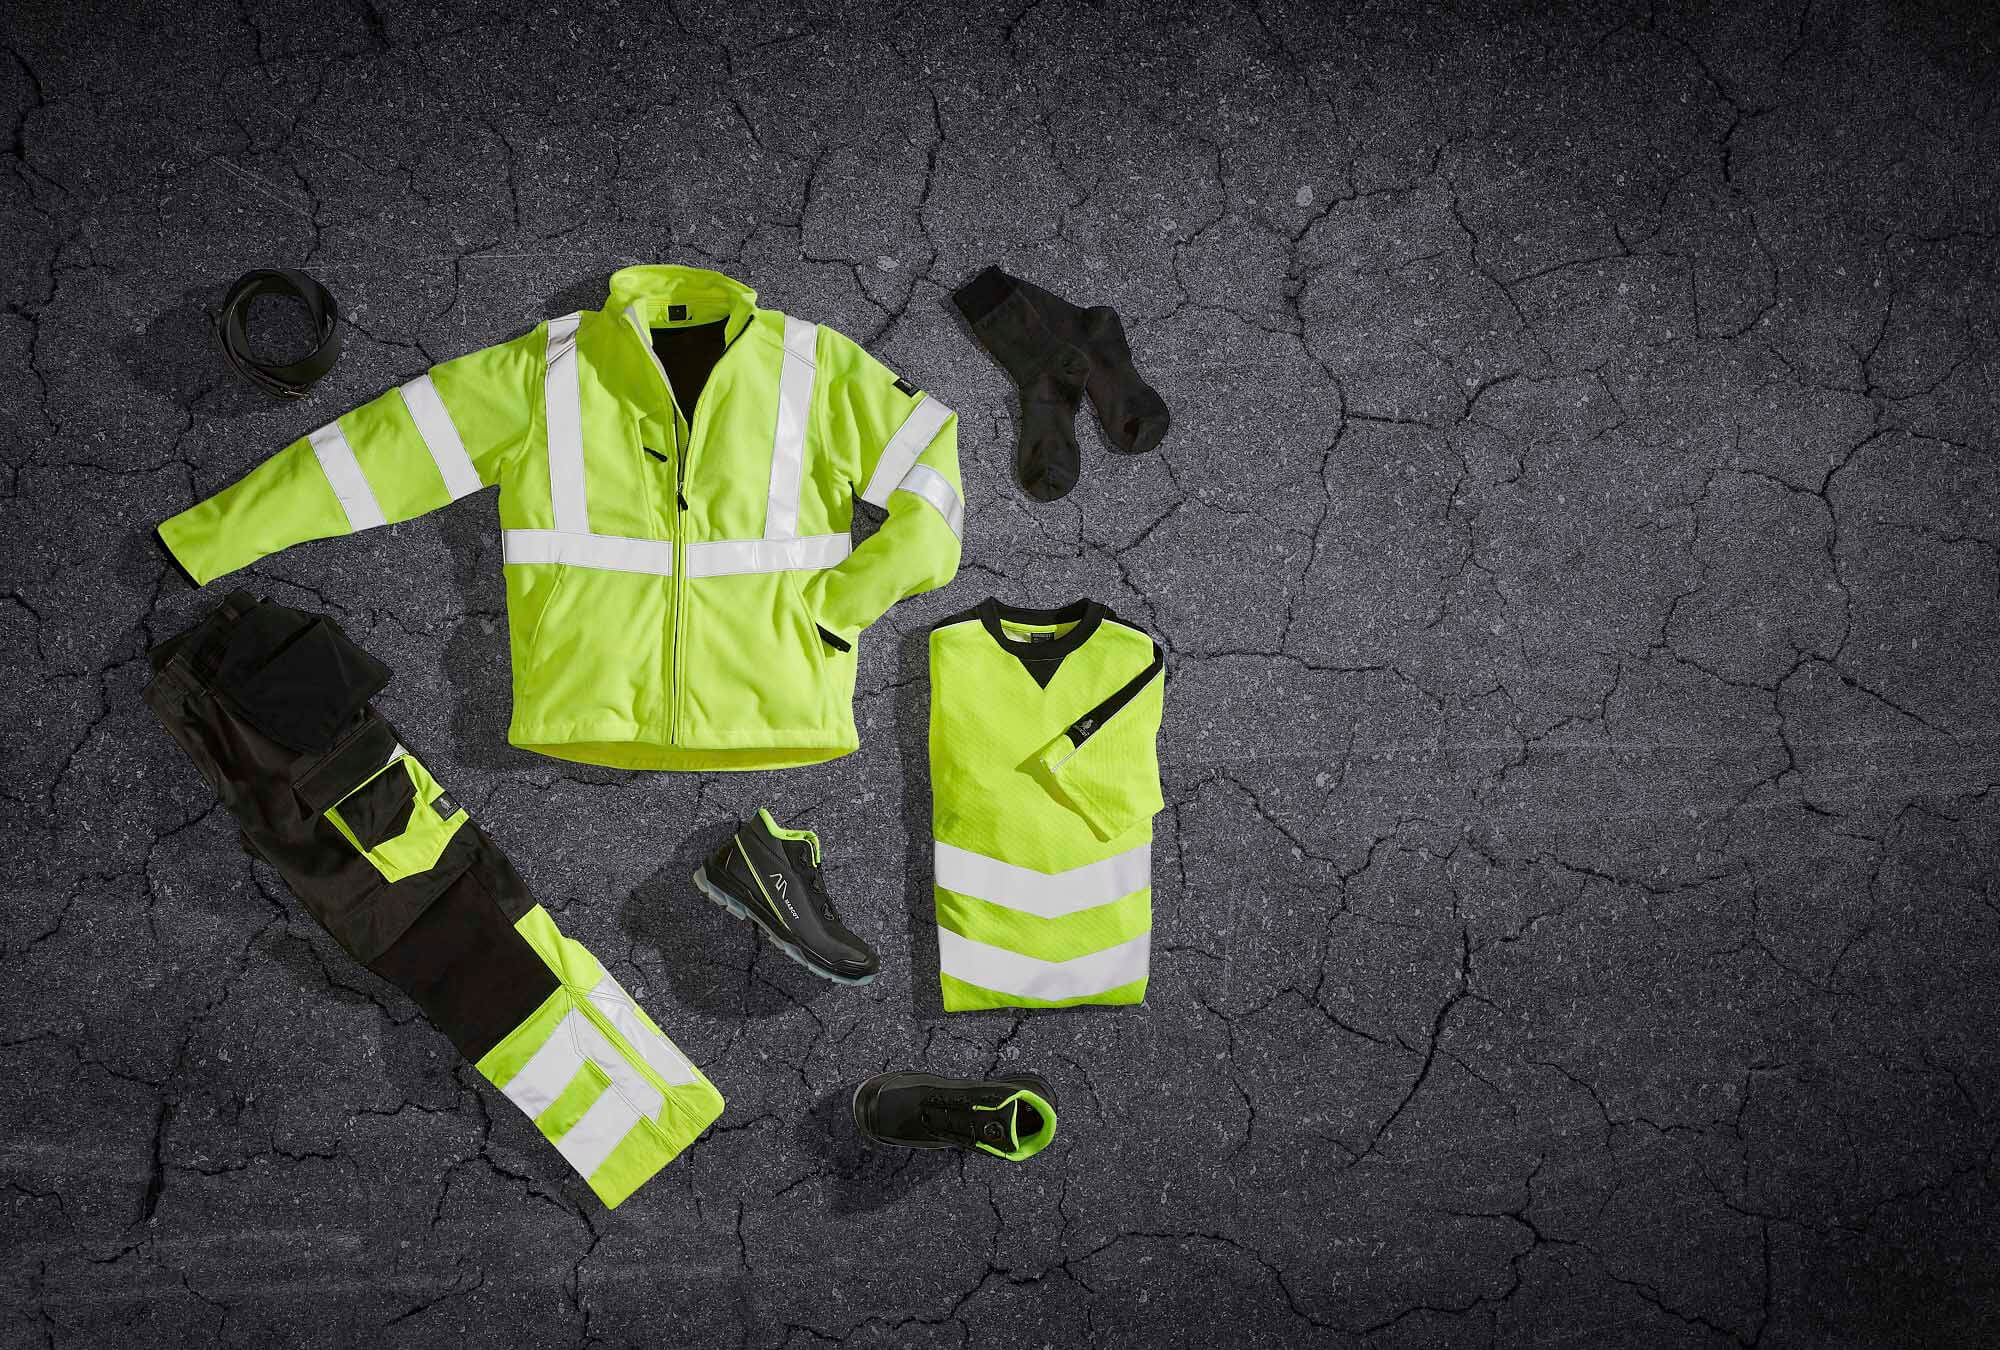 Fluoreszierende gelbe Arbeitskleidung – MASCOT Warnschutz